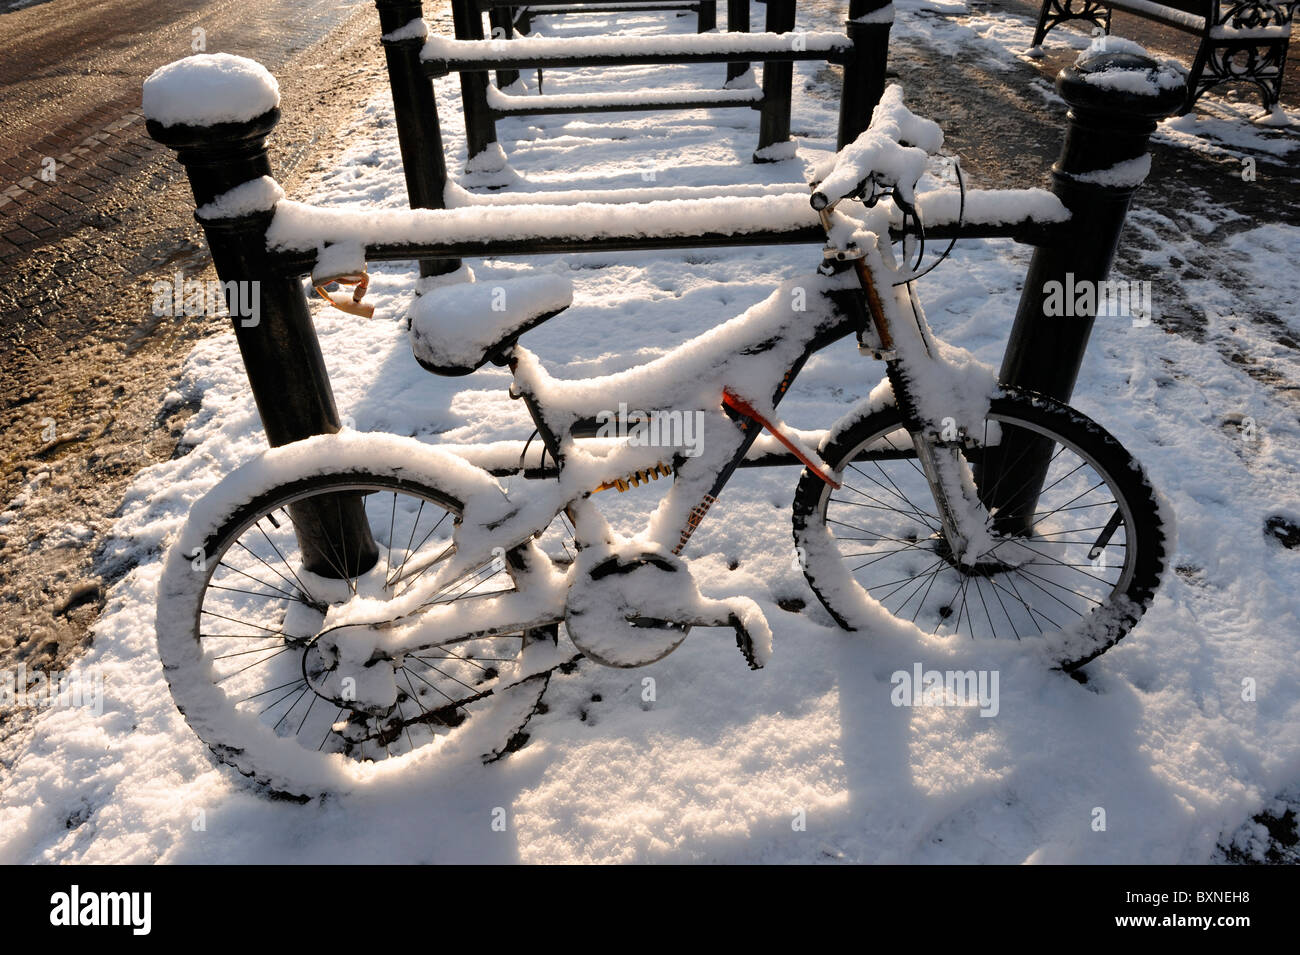 Vélos couvert de neige Banque D'Images